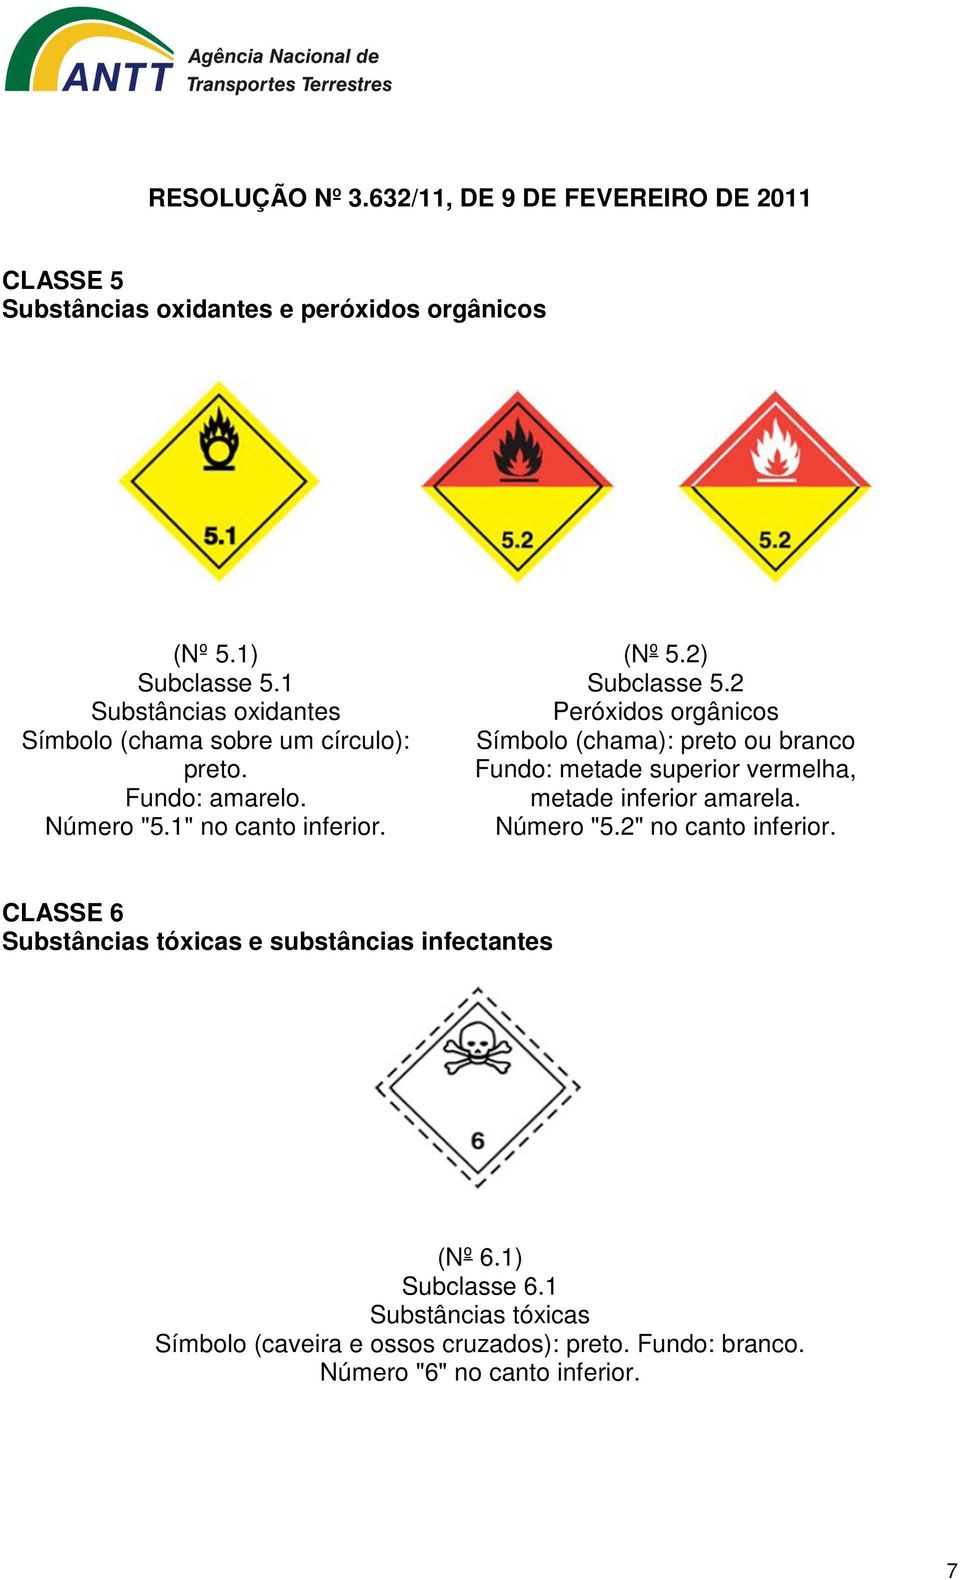 2 Peróxidos orgânicos Símbolo (chama): preto ou branco Fundo: metade superior vermelha, metade inferior amarela. Número "5.